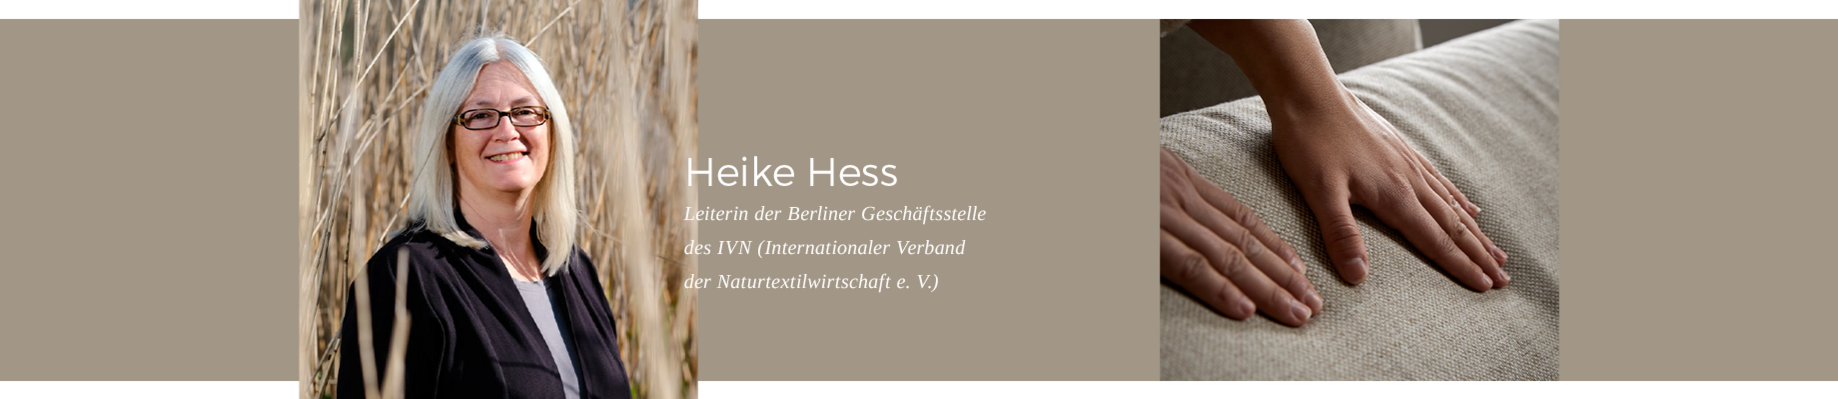 Erfahren Sie mehr: Heike Hess, Leiterin der IVN-Geschäftsstelle in Berlin